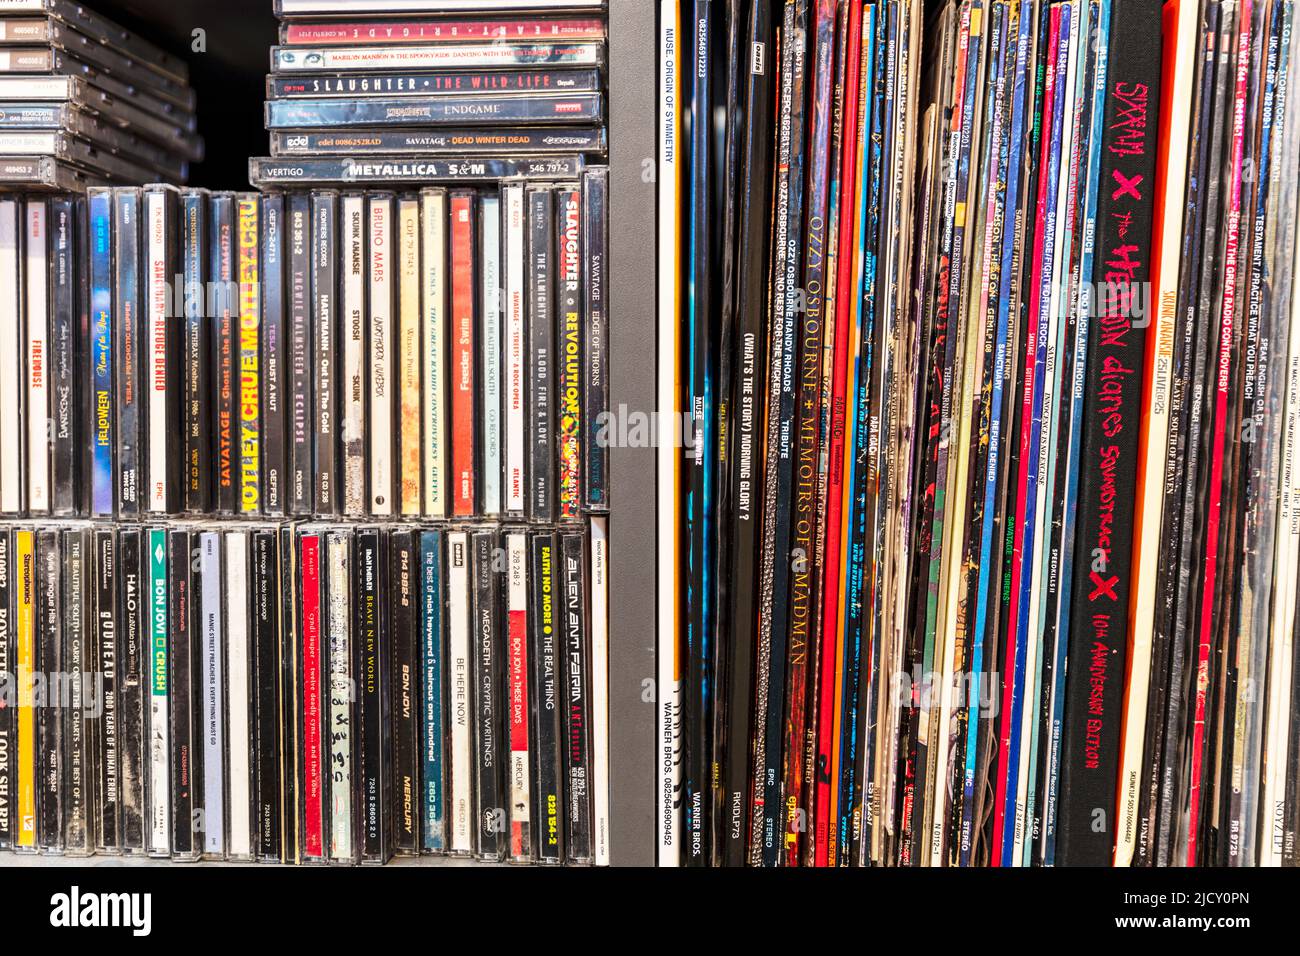 Colección de discos de vinilo, cd's, colección de cd, mangas de discos, discos de vinilo, colección de música, colección de discos, heavy metal música, discos, vinilo, Foto de stock